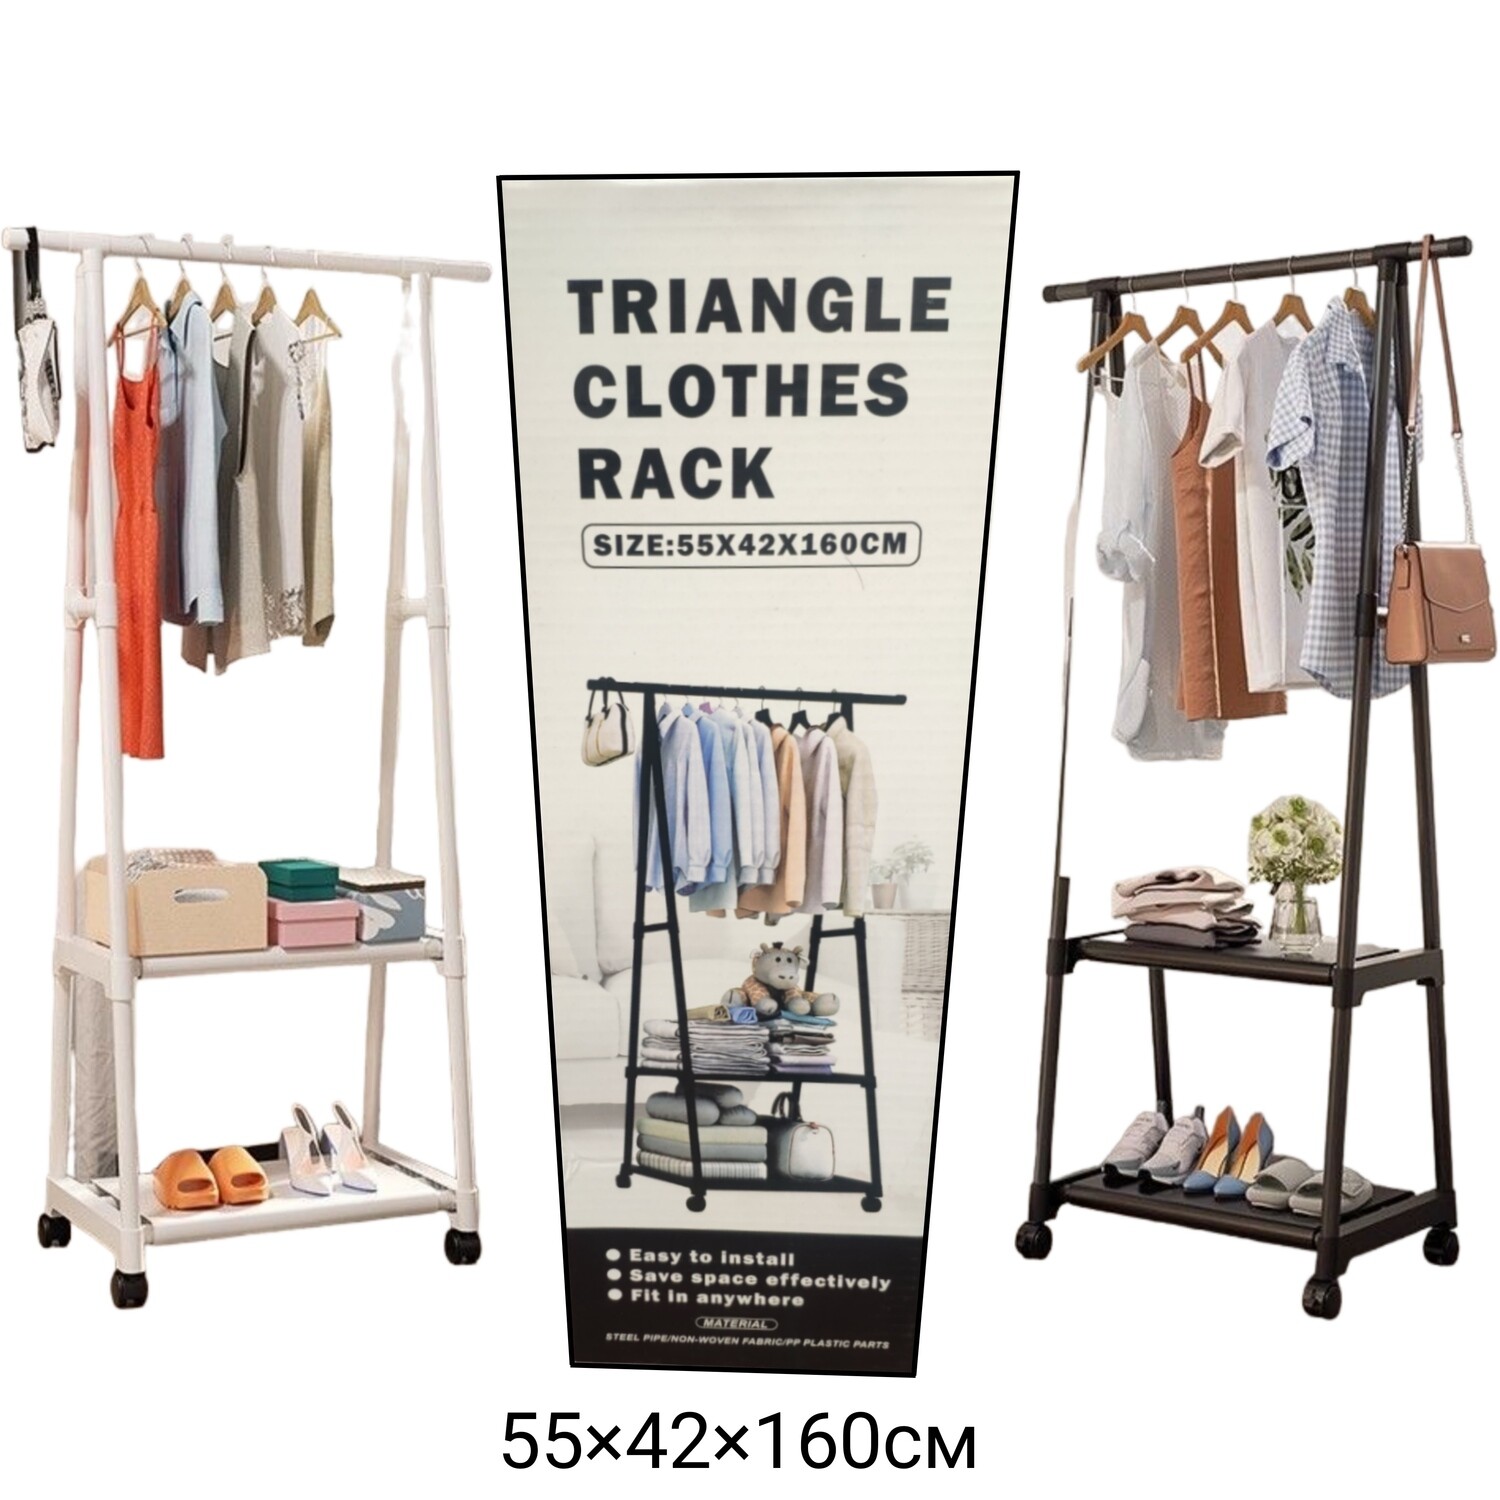 Напольная передвижная вешалка, треугольная стойка для одежды "Triangle Clothes Rack" 55х42х160см